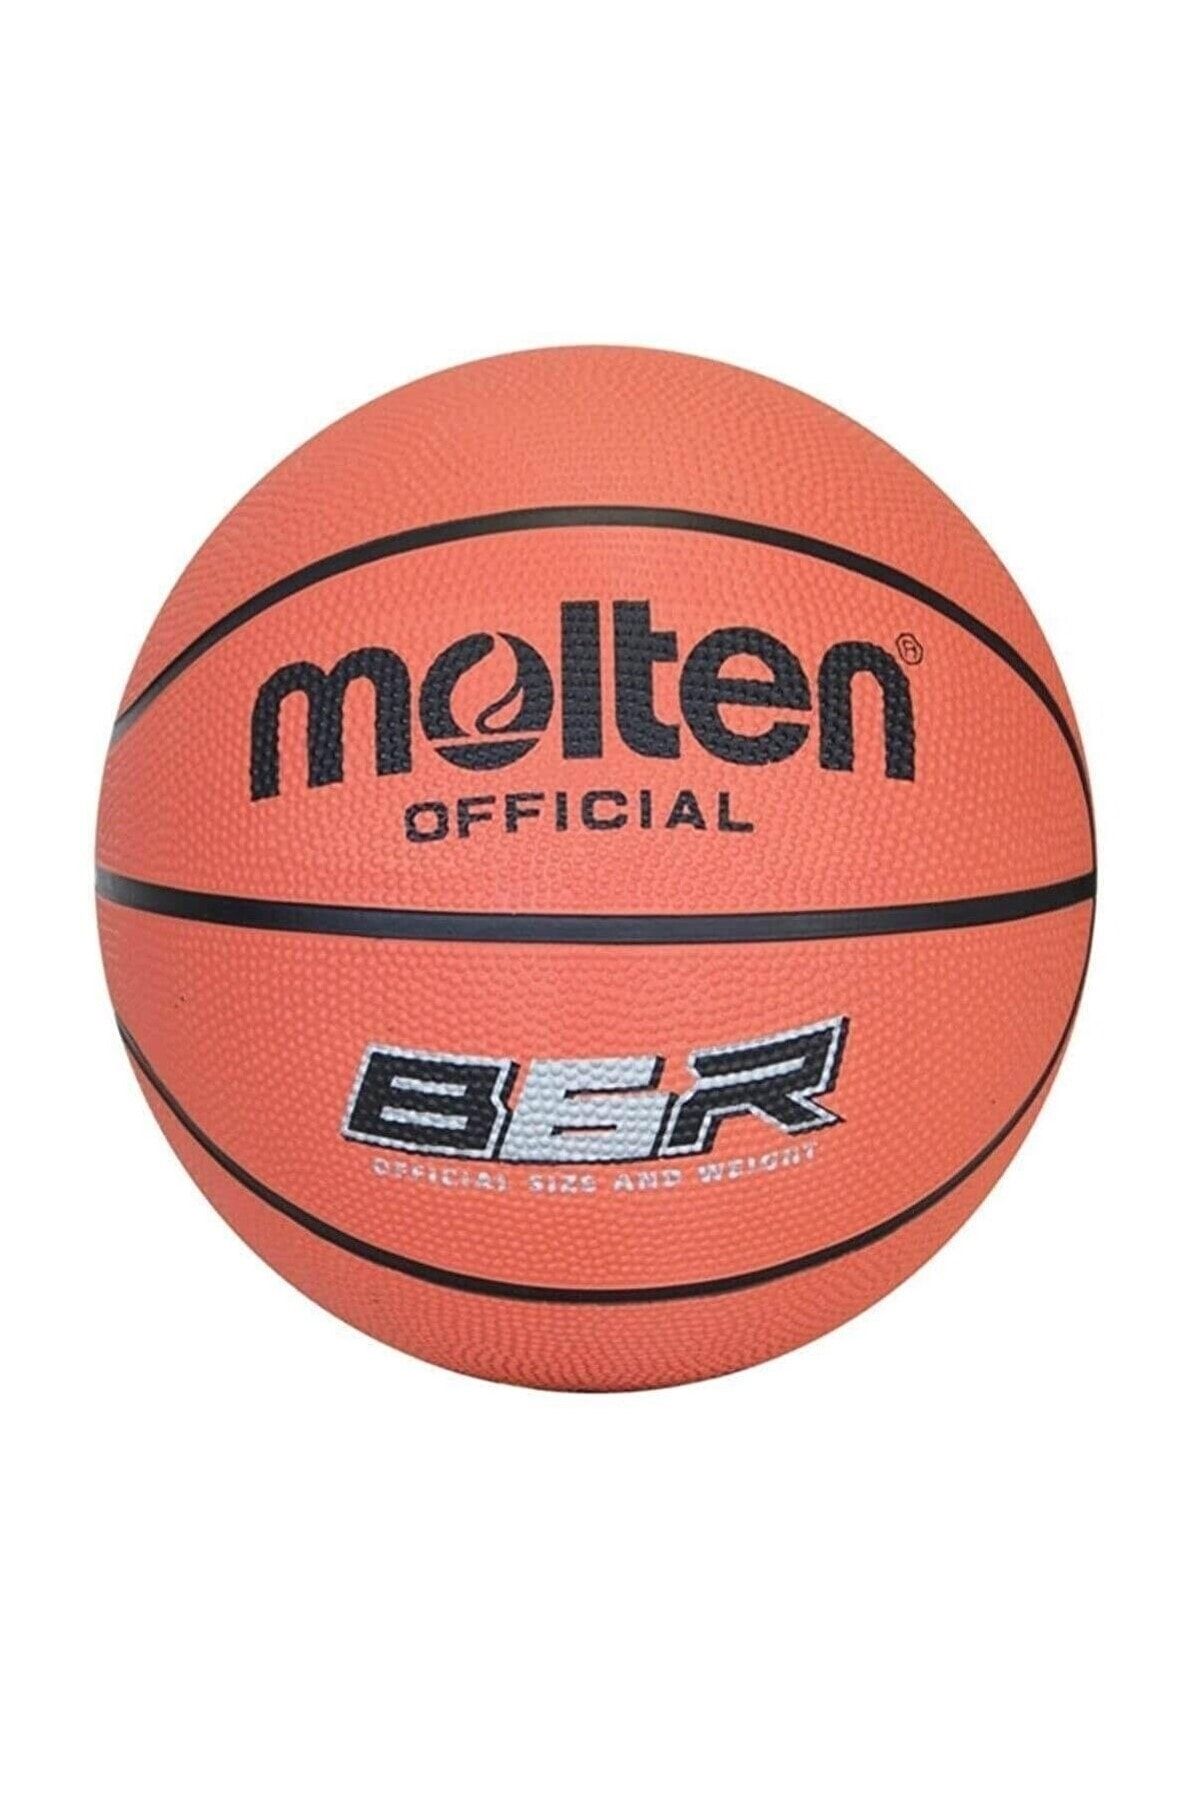 Molten B6r2/k Basketbol Topu 6 No